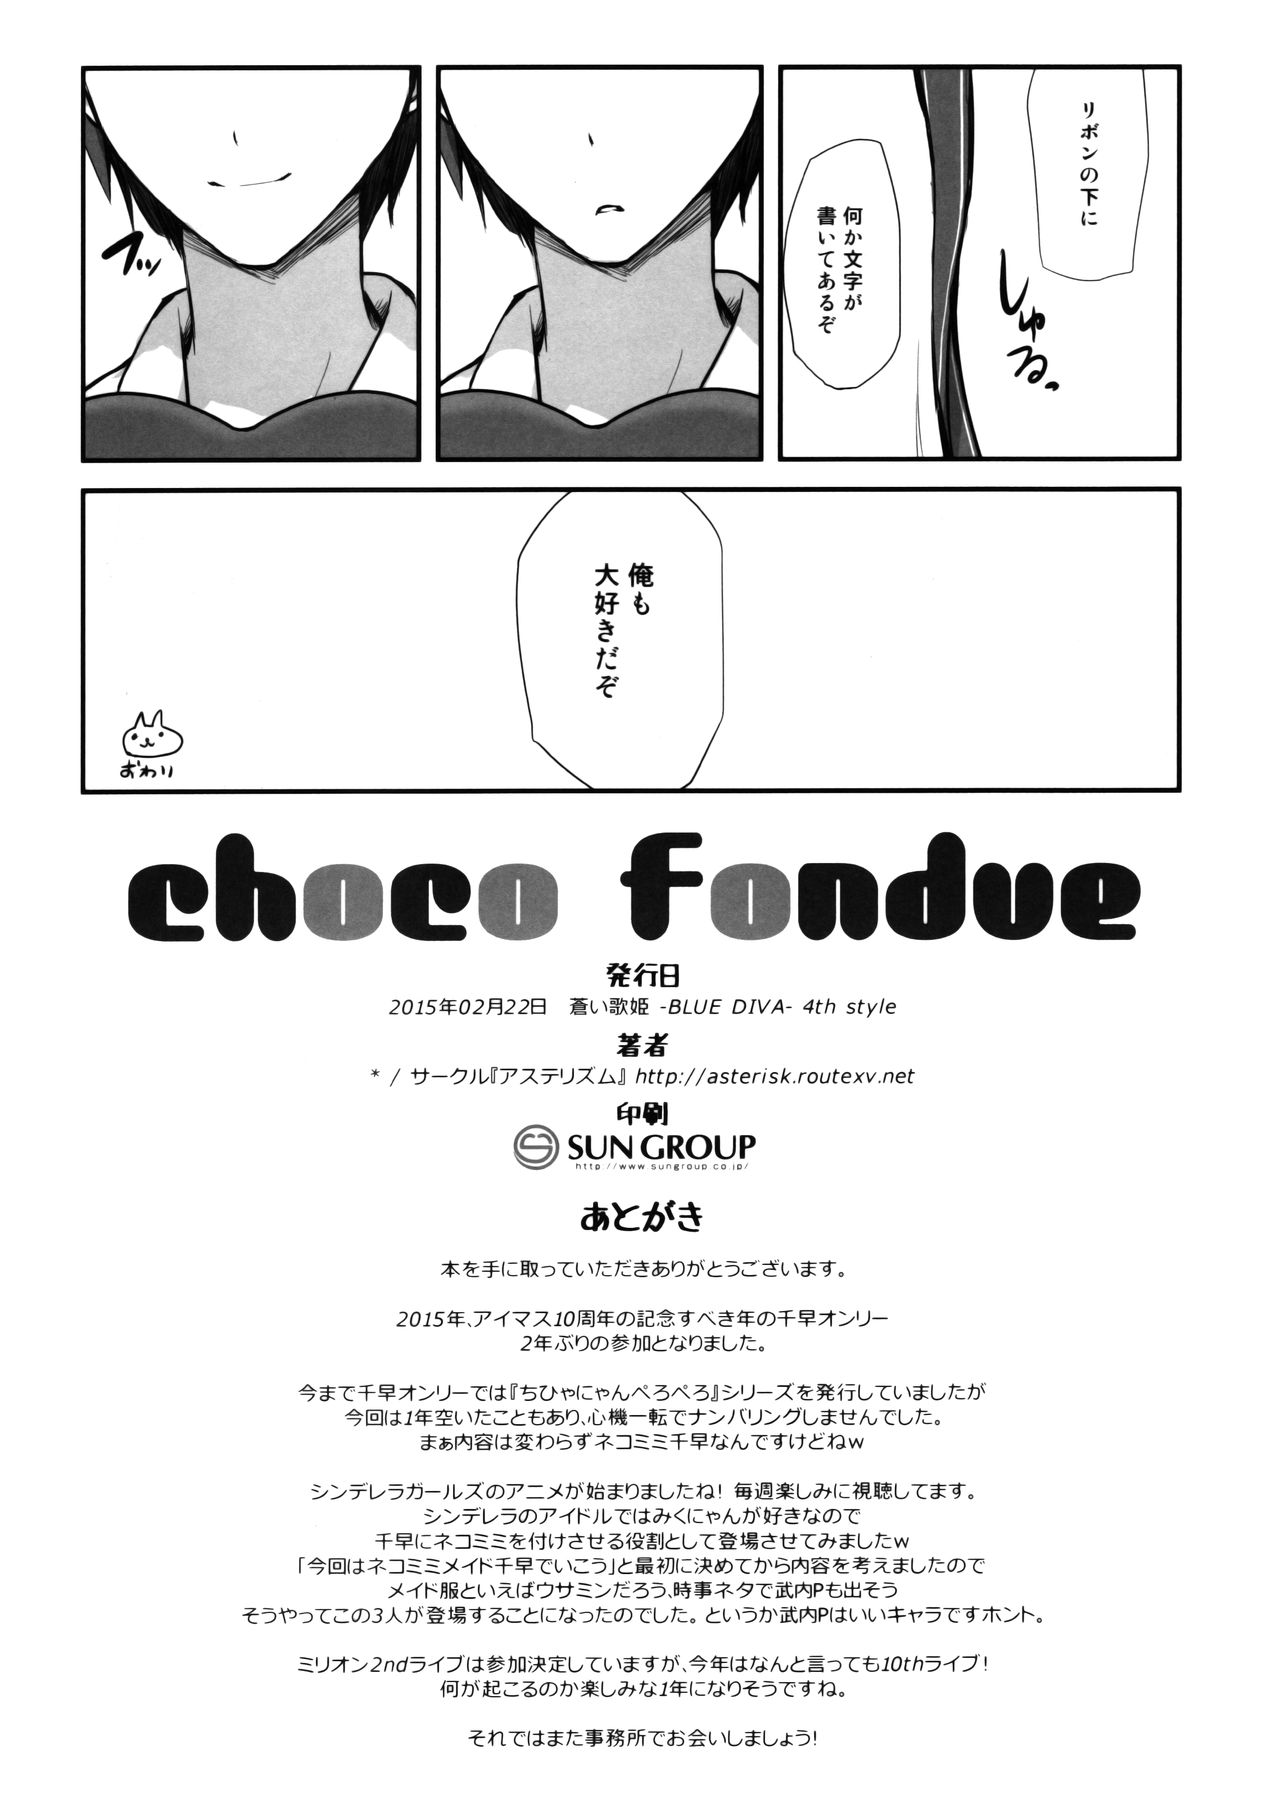 (蒼い歌姫 -BLUE DIVA- 4th style) [アステリズム (*)] choco fondue (アイドルマスター)